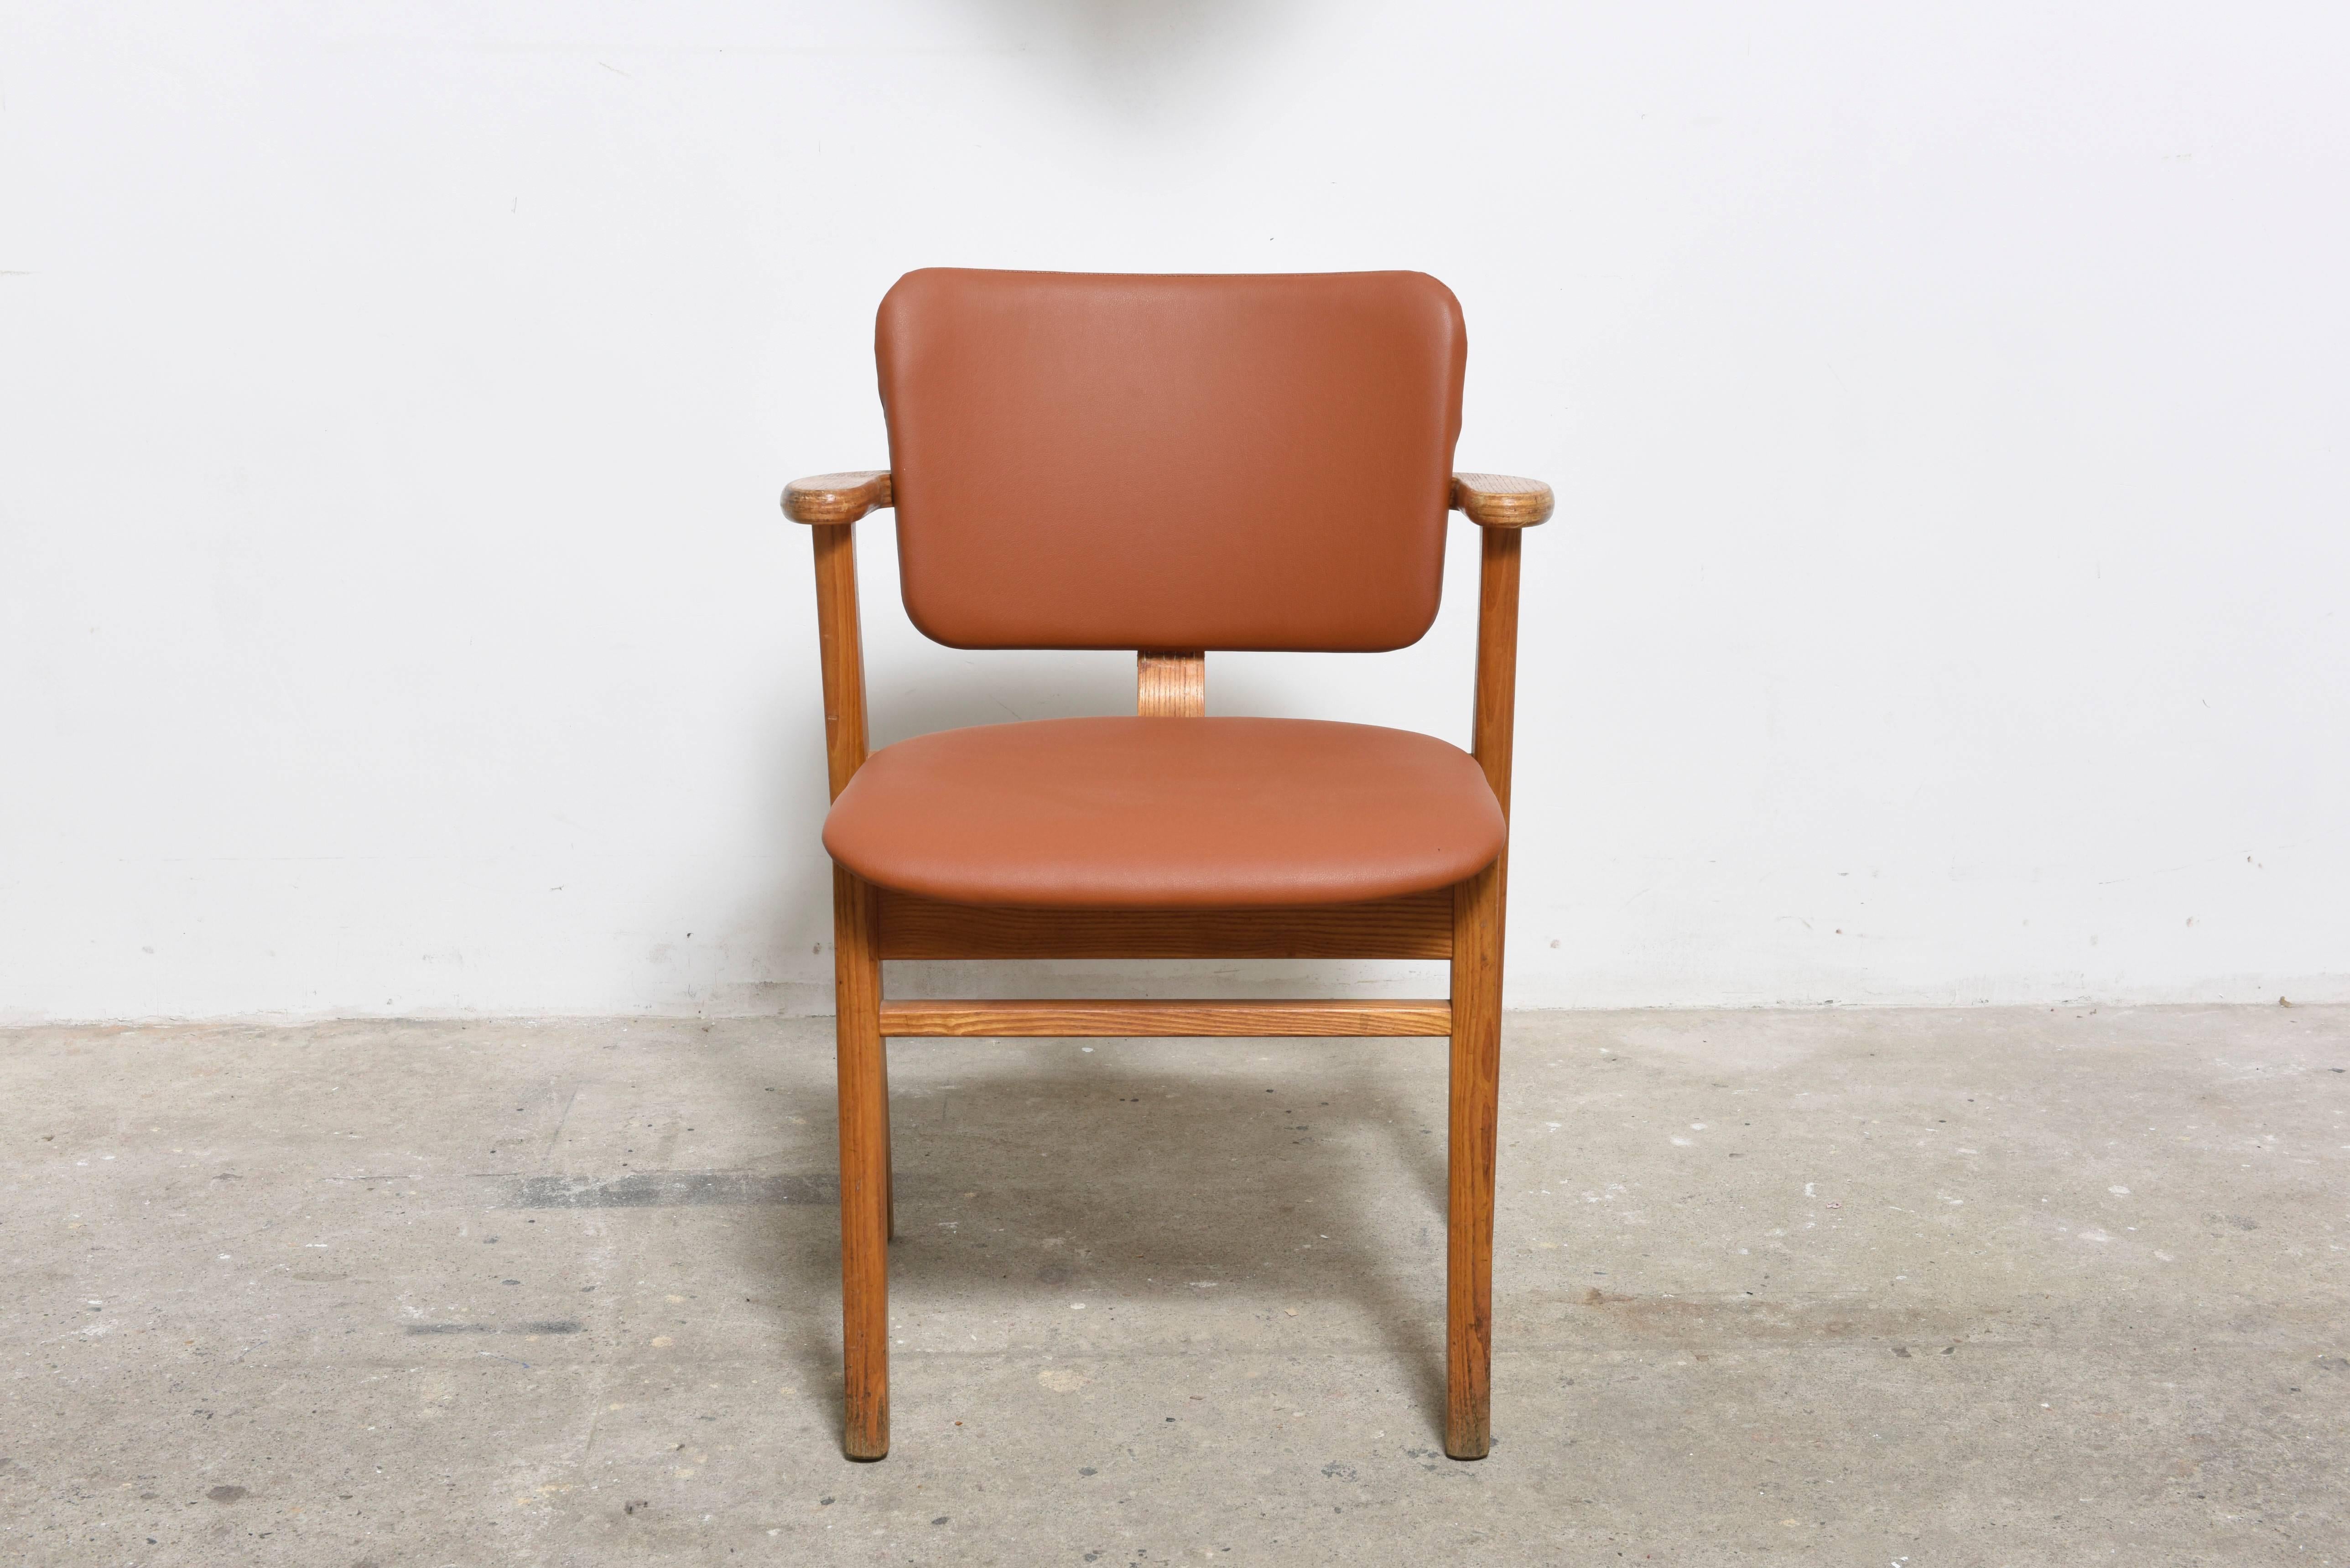 Ensemble de trois chaises en bois conçues par Ilmari Tapiovaara, produites en 1953 par la société finlandaise Keravan Puuteollisuus pour être distribuées aux États-Unis par Knoll. 

L'assise est retapissée en cuir camel, le cadre et les accoudoirs